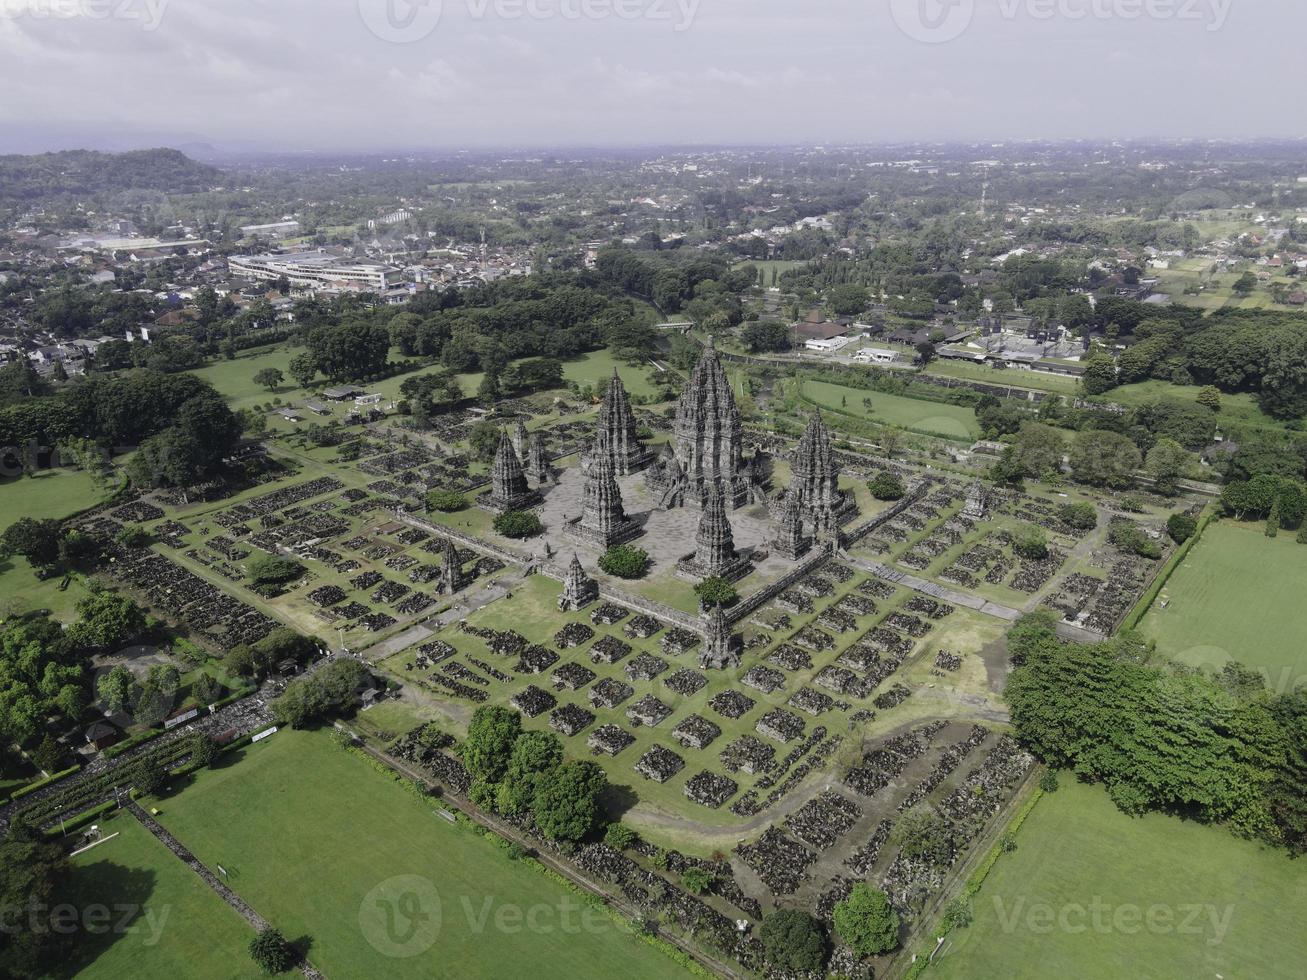 vista aérea do complexo de templos prambanan bela paisagem em yogyakarta, indonésia foto